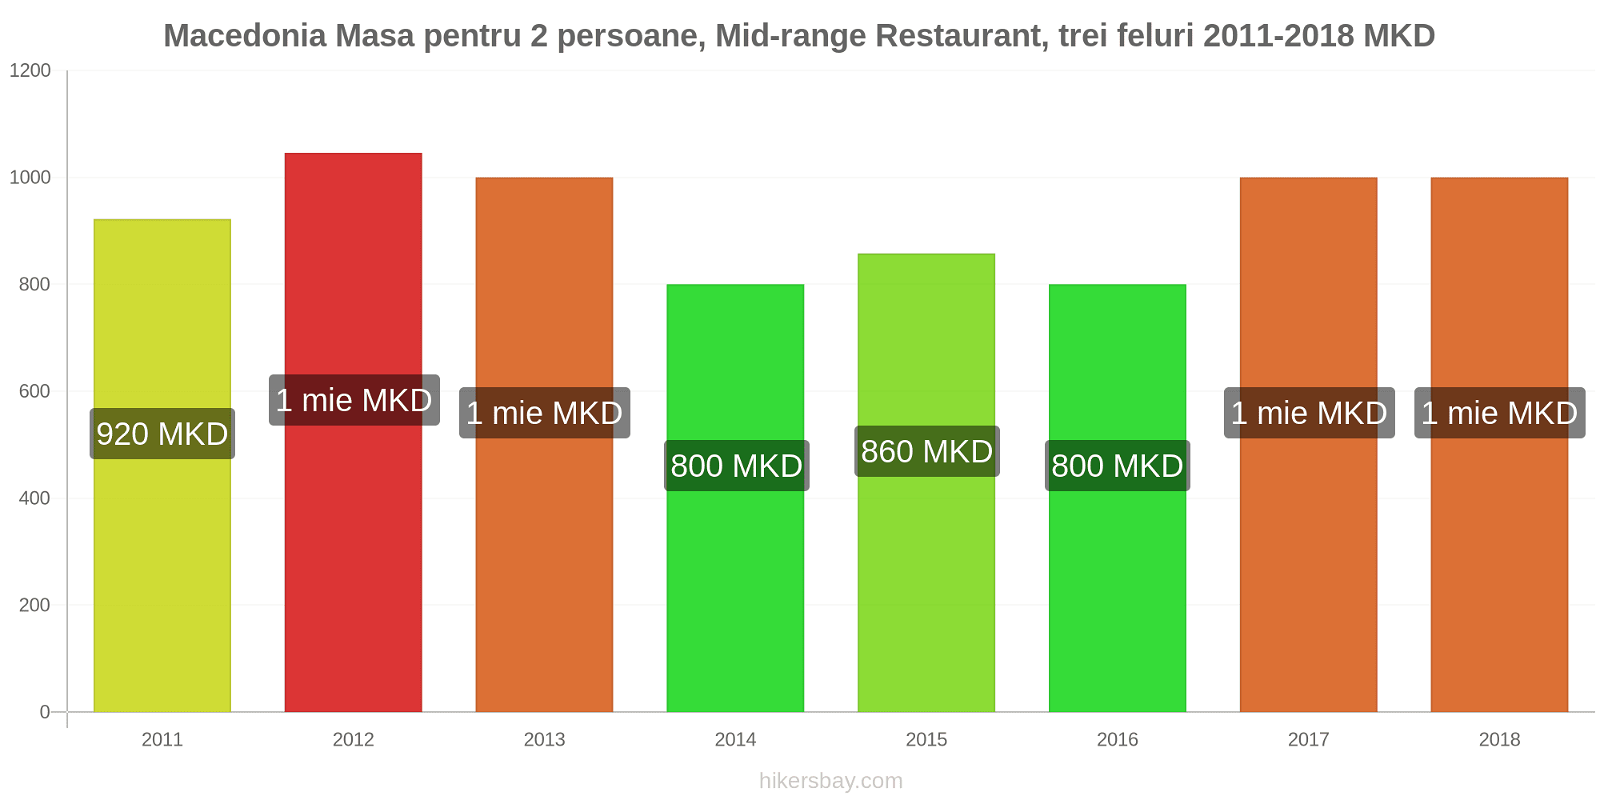 Macedonia schimbări de prețuri Masă pentru 2 persoane, restaurant de gamă medie, trei feluri de mâncare hikersbay.com